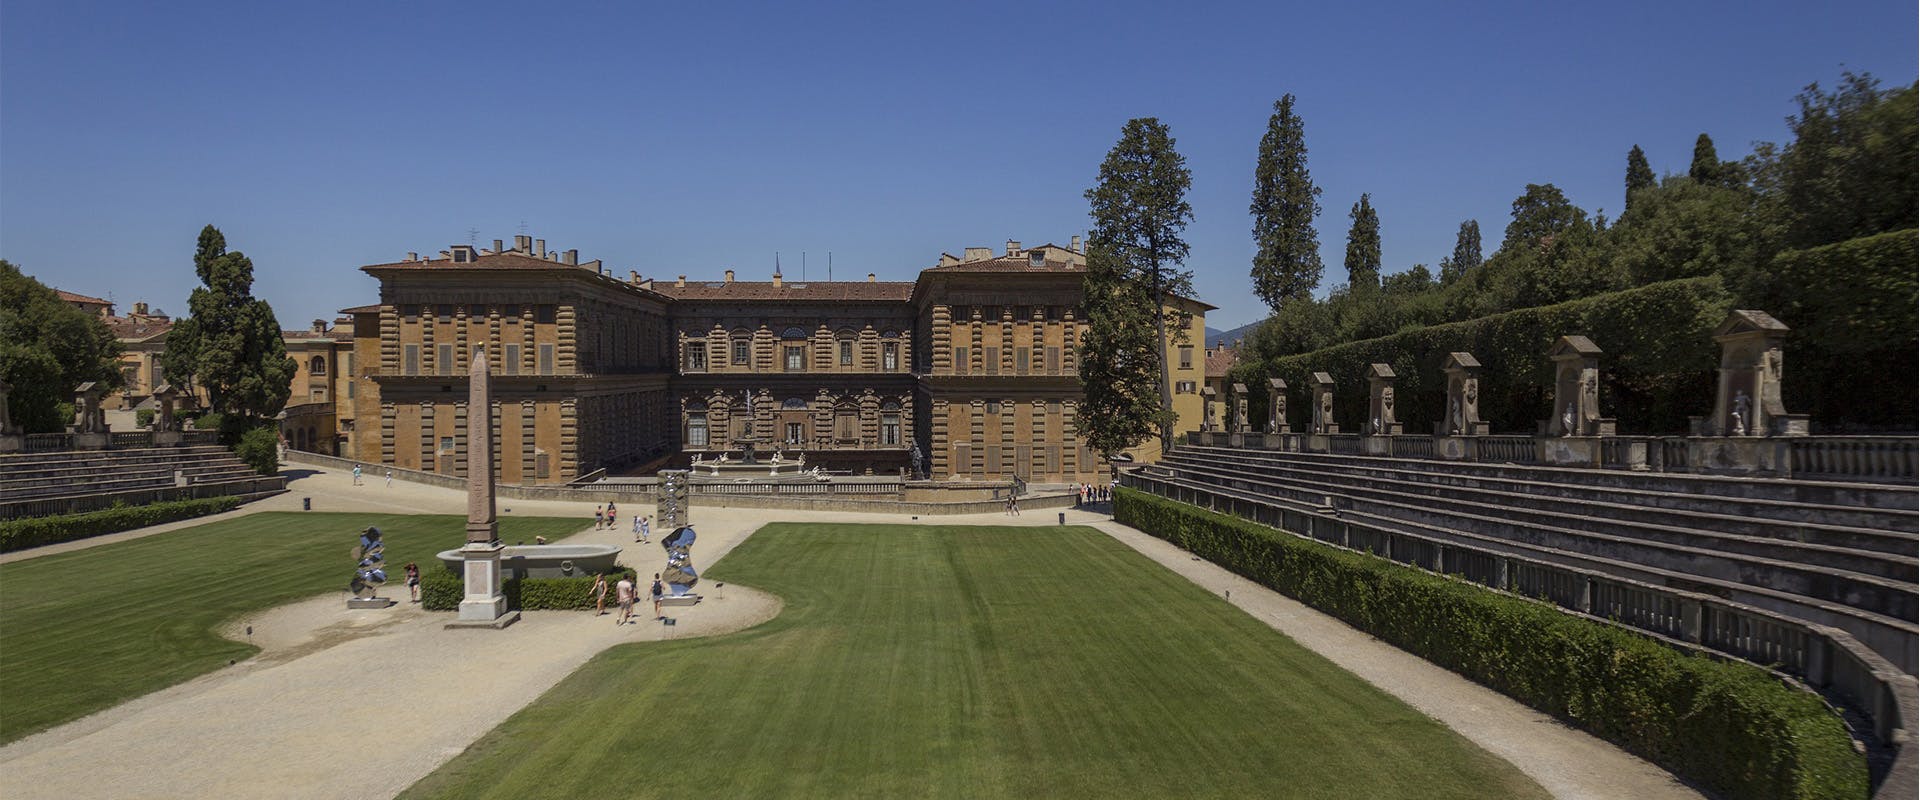 Palazzo Pitti dal Giardino di Boboli